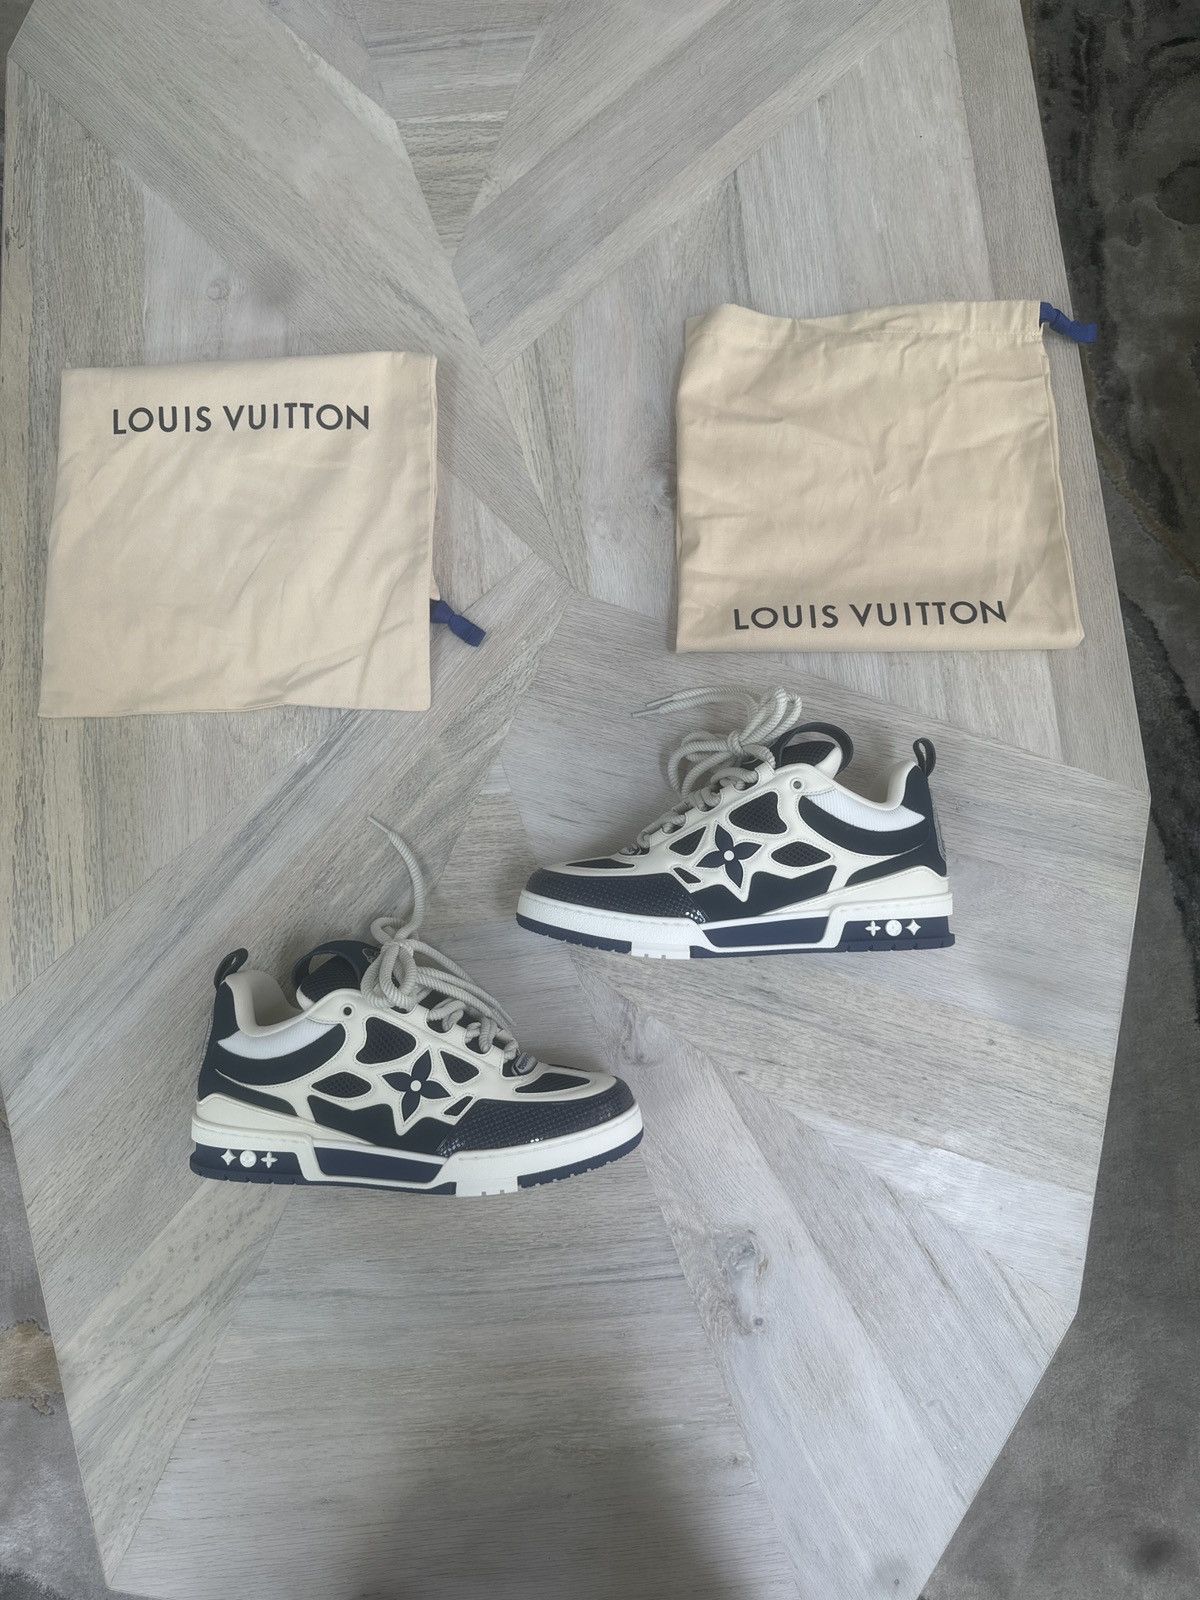 Louis Vuitton LV Skate Sneaker Yellow. Size 08.0